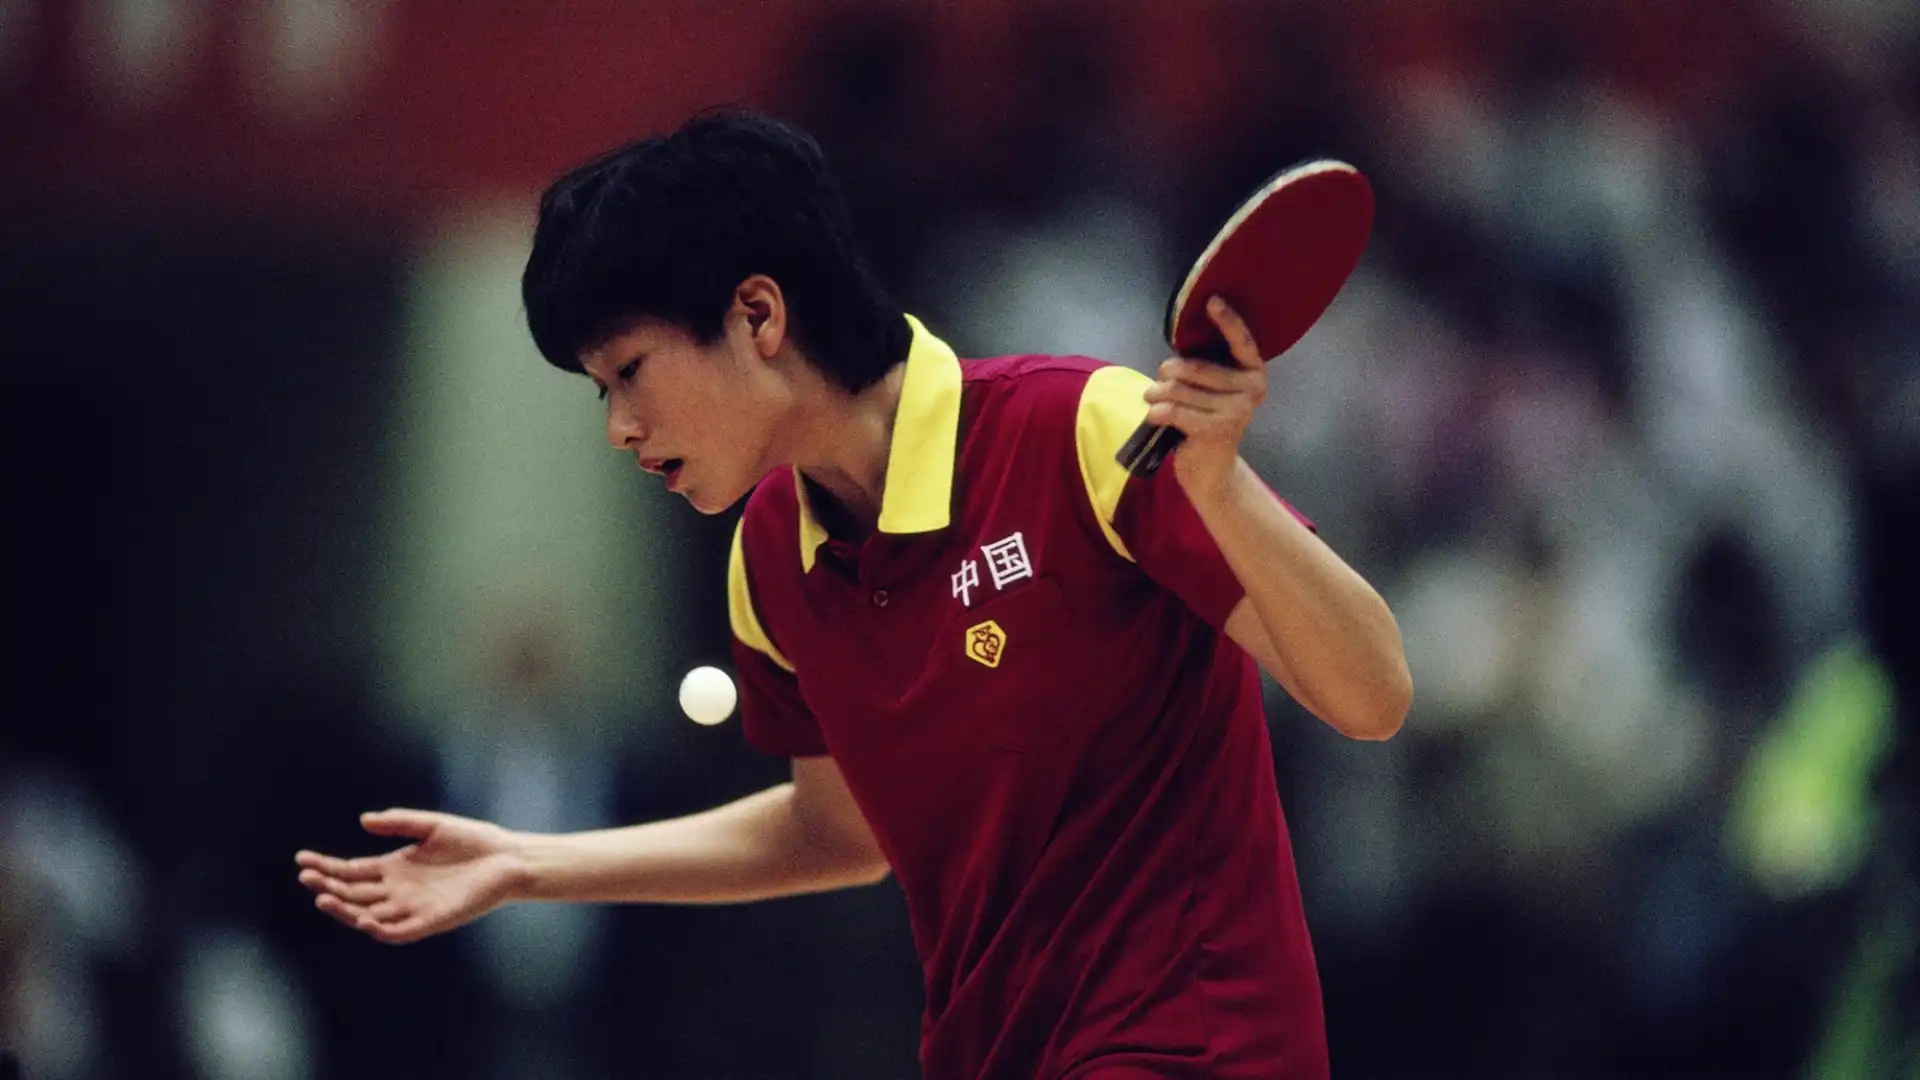 Chen Jing (Cina/Taiwan): patrimonio netto stimato 18 milioni di dollari. Campionessa alle Olimpiadi di Seoul 1988